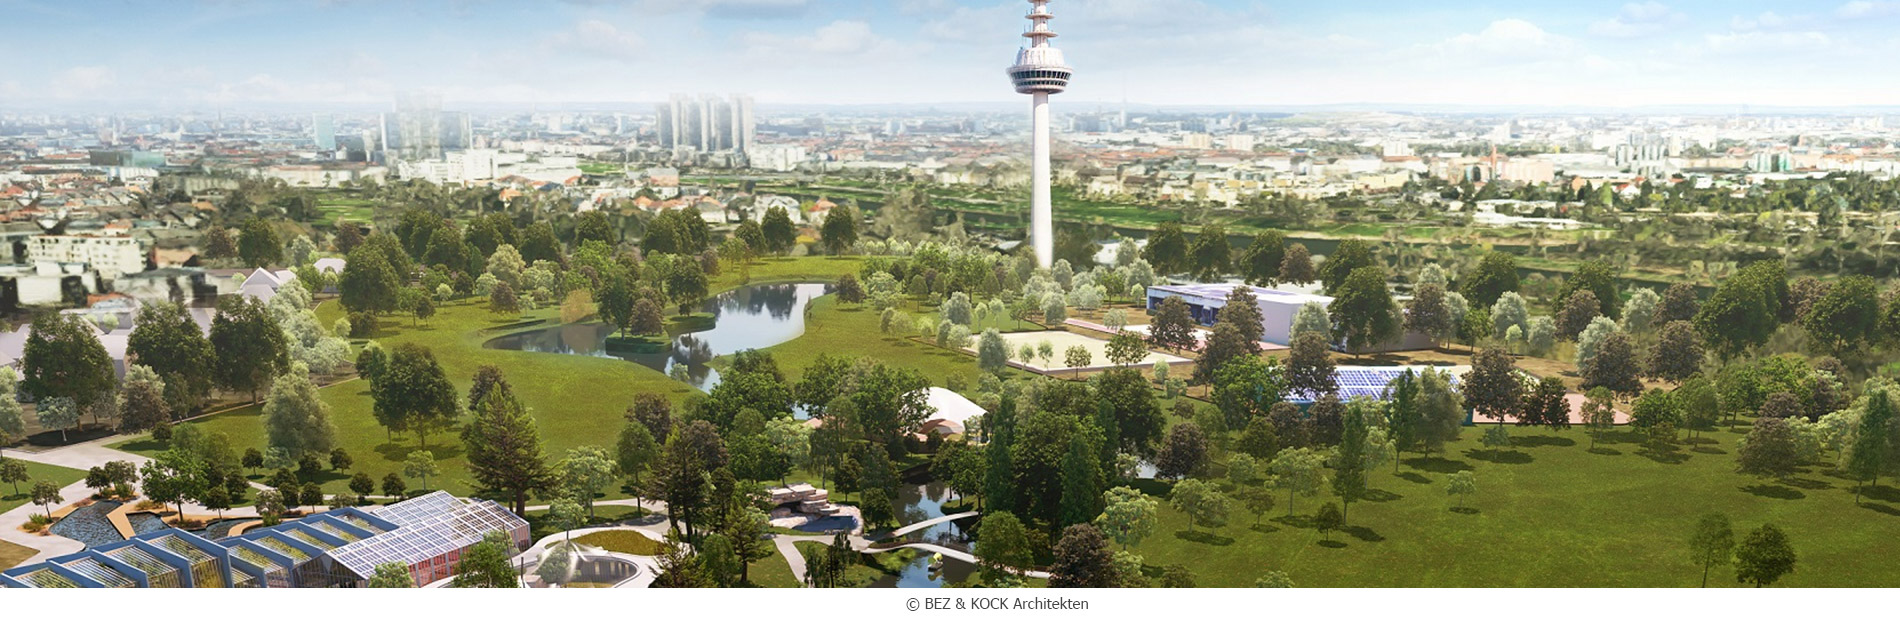 02-Luisenpark_Neue-Parkmitte_Vogelperspektive_Bild-BEZ-KOCK-Architekten-_renderbar_webC